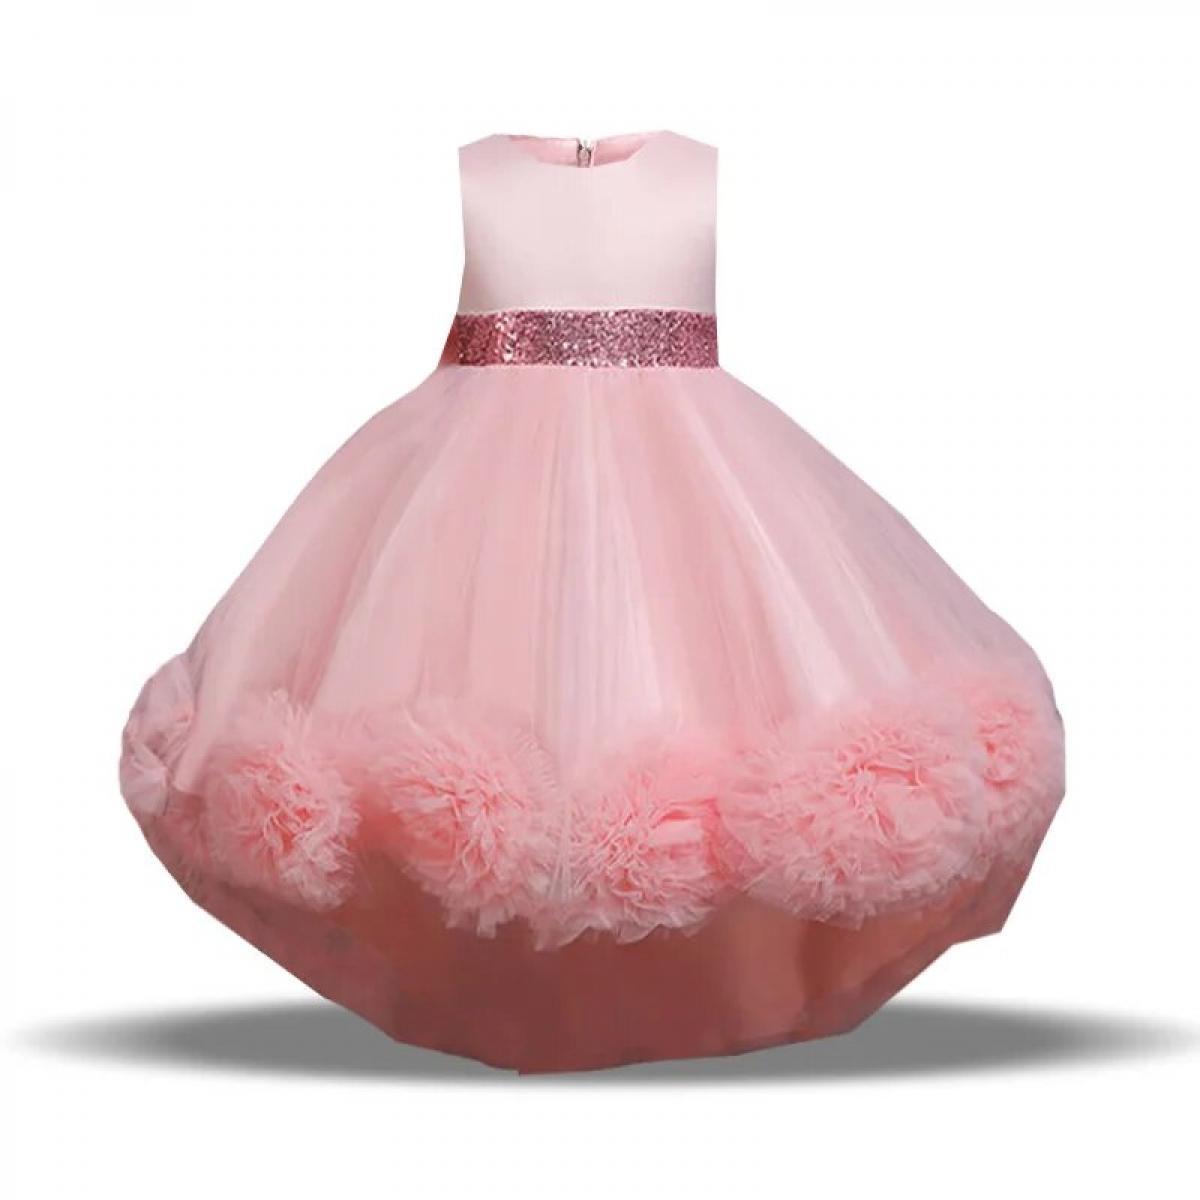 בגדי מסיבה לילדים תחרה רשמית שמלת כלה ללא שרוולים שמלת טוטו נסיכה פרח בנות בגדי ילדים 8 10 שנים